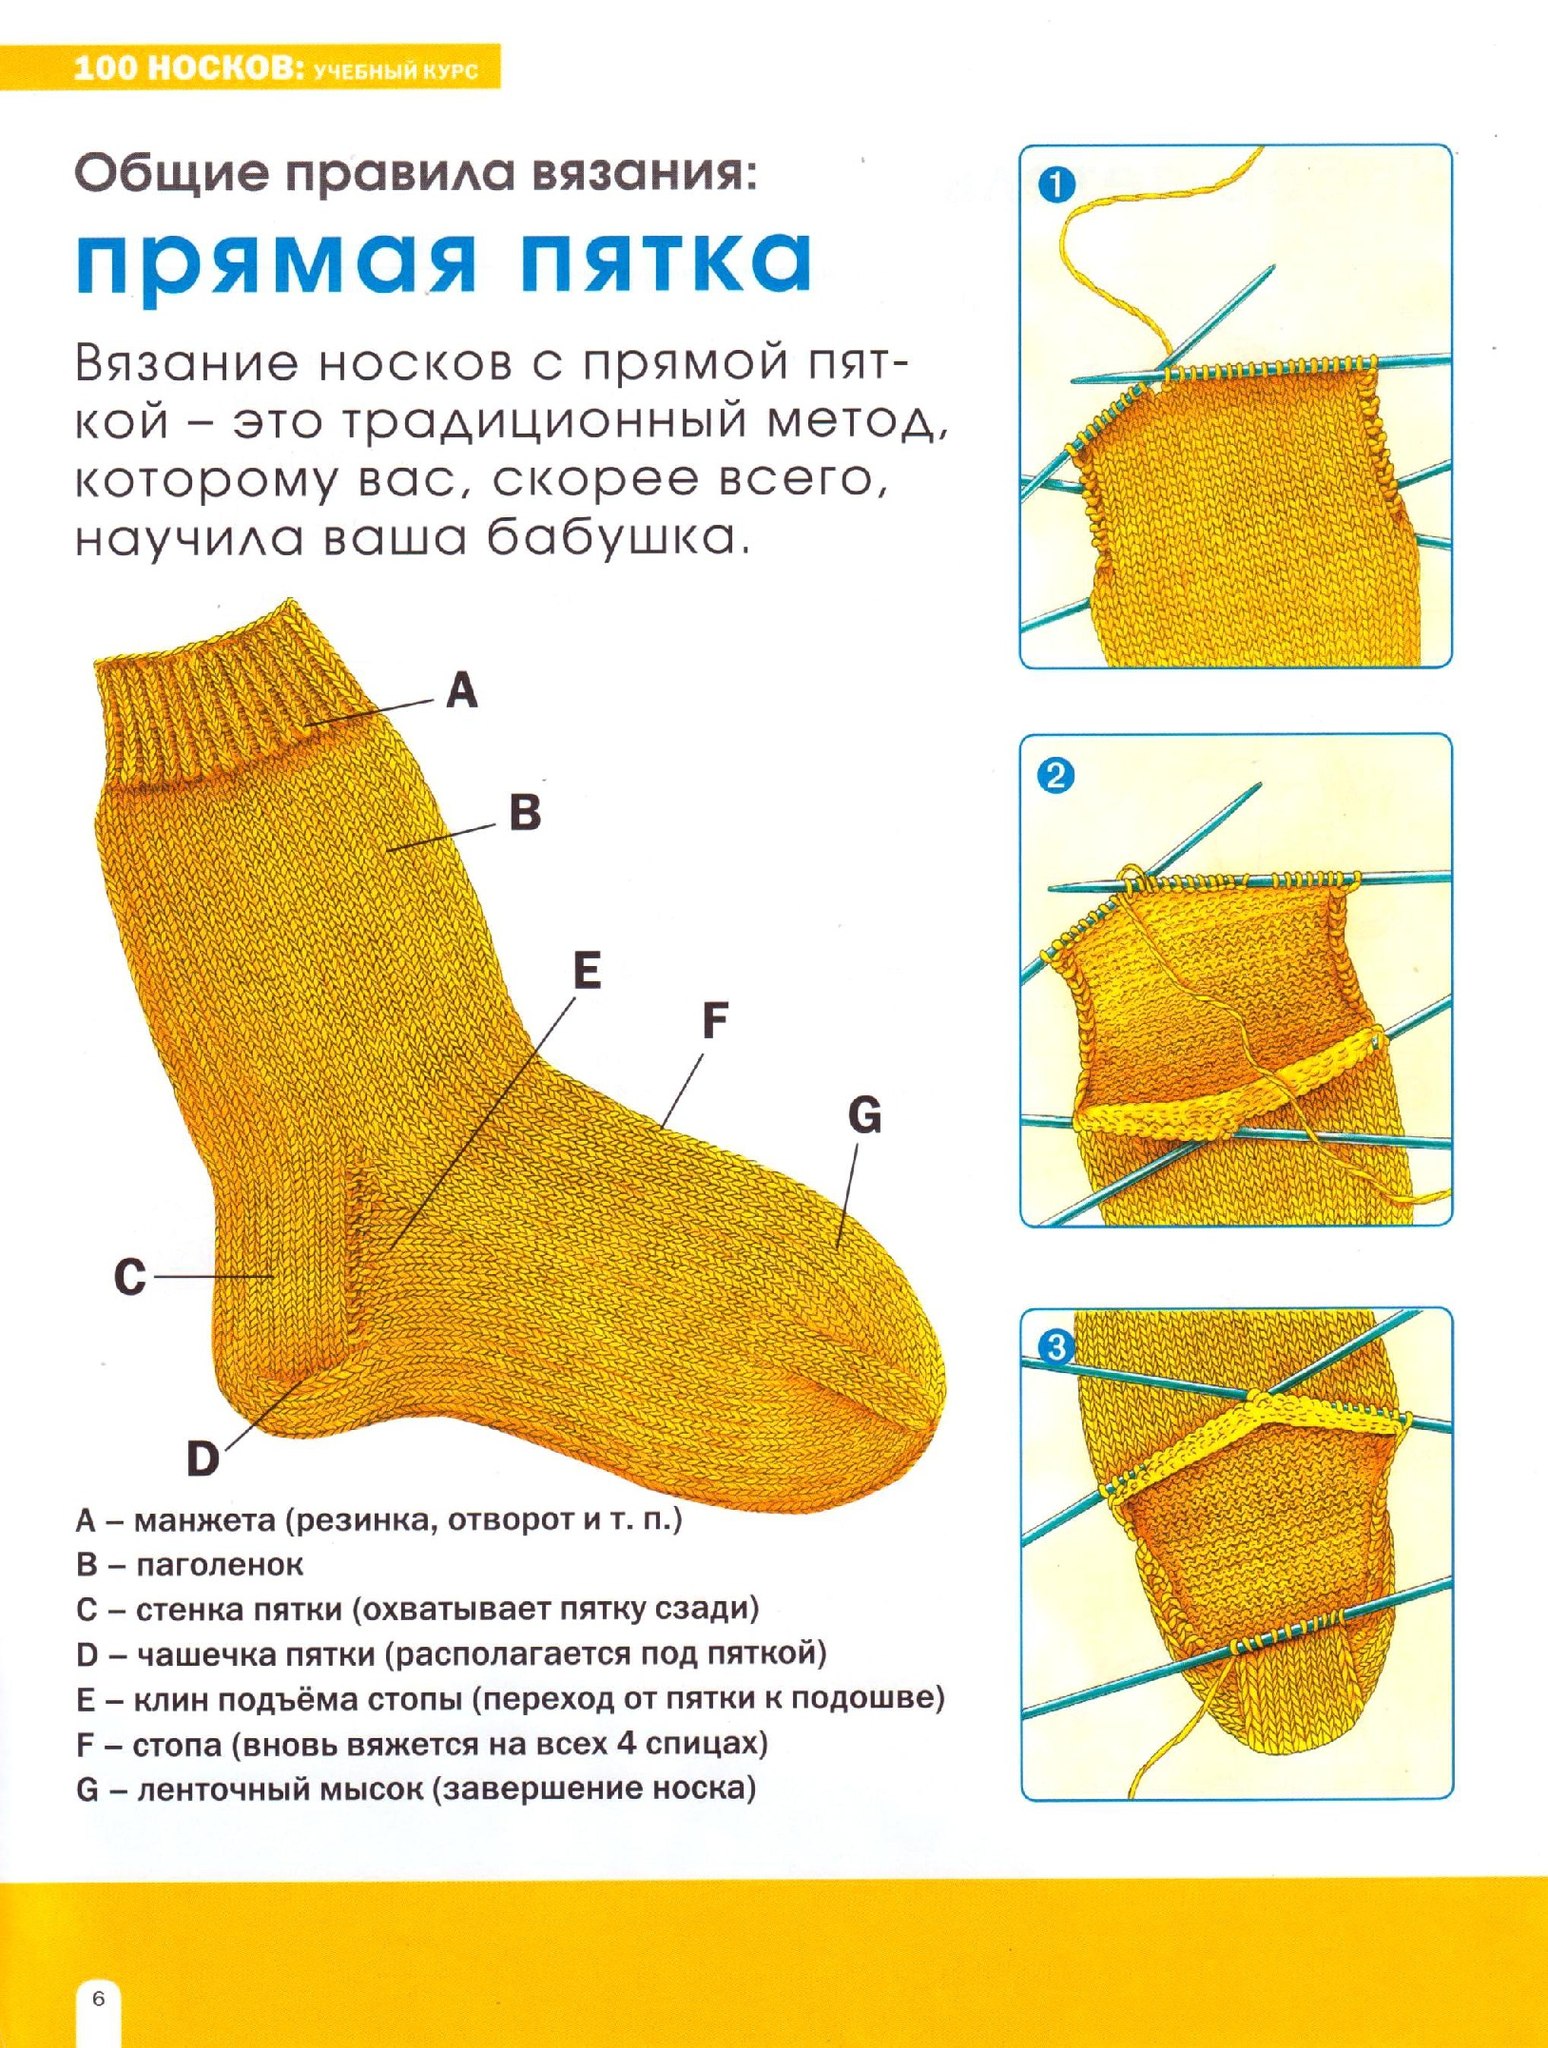 Вязание носков на 5 спицах пошагово. Вязать пятку носка спицами схема. Вязание пятки носка спицами схема. Вывязывание пятки носка спицами для начинающих для детей. Схема вязания детских носков на 5 спицах для начинающих.